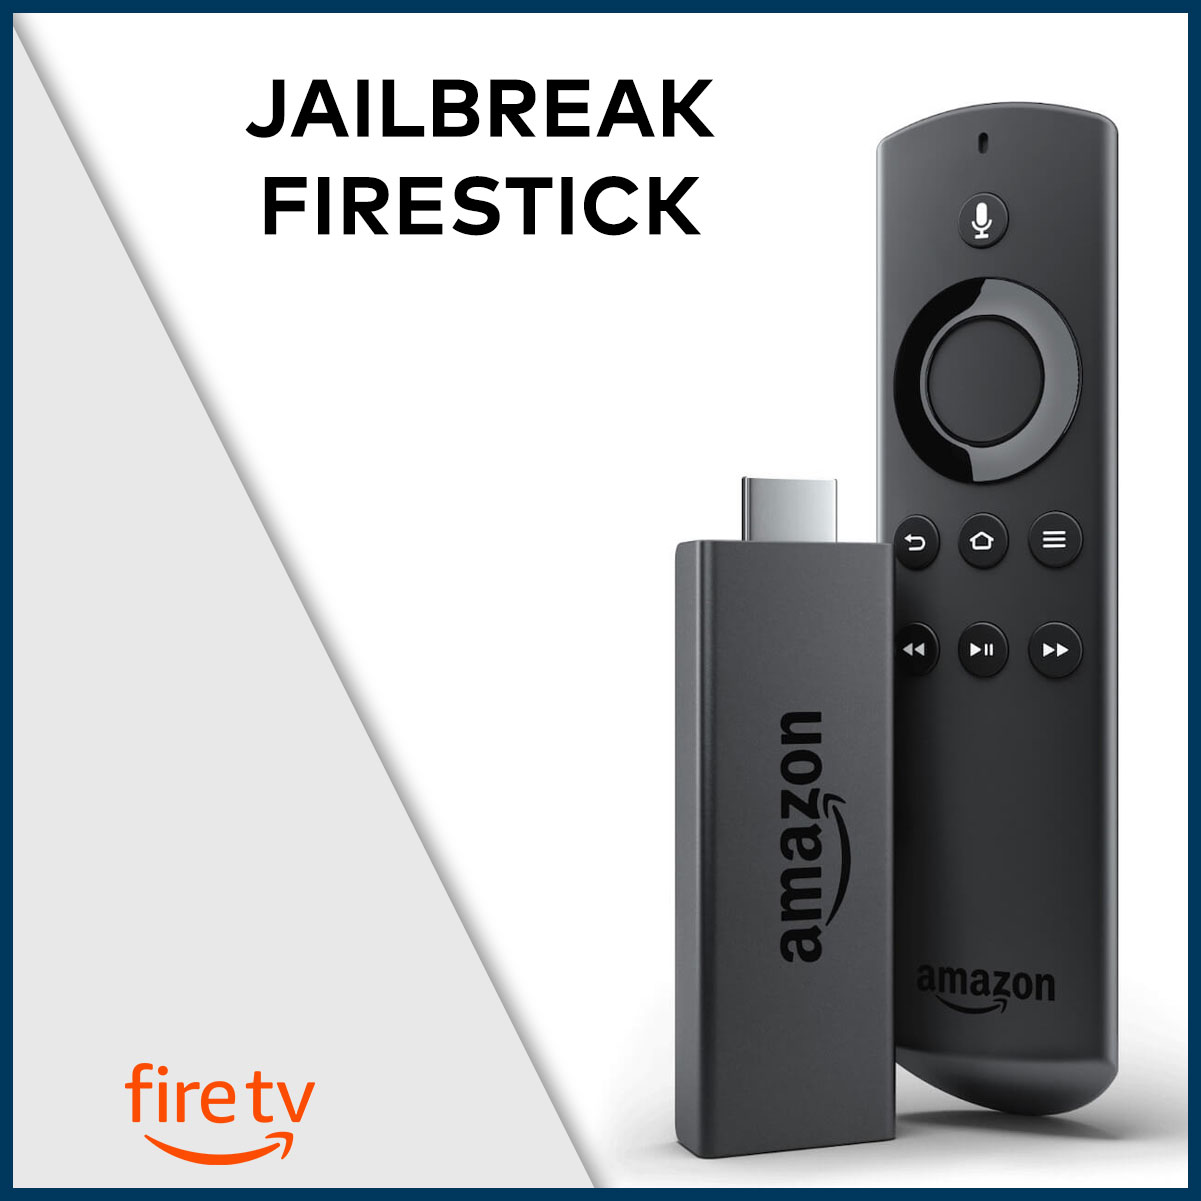 Jailbreak Firestick Easy Precise Guide